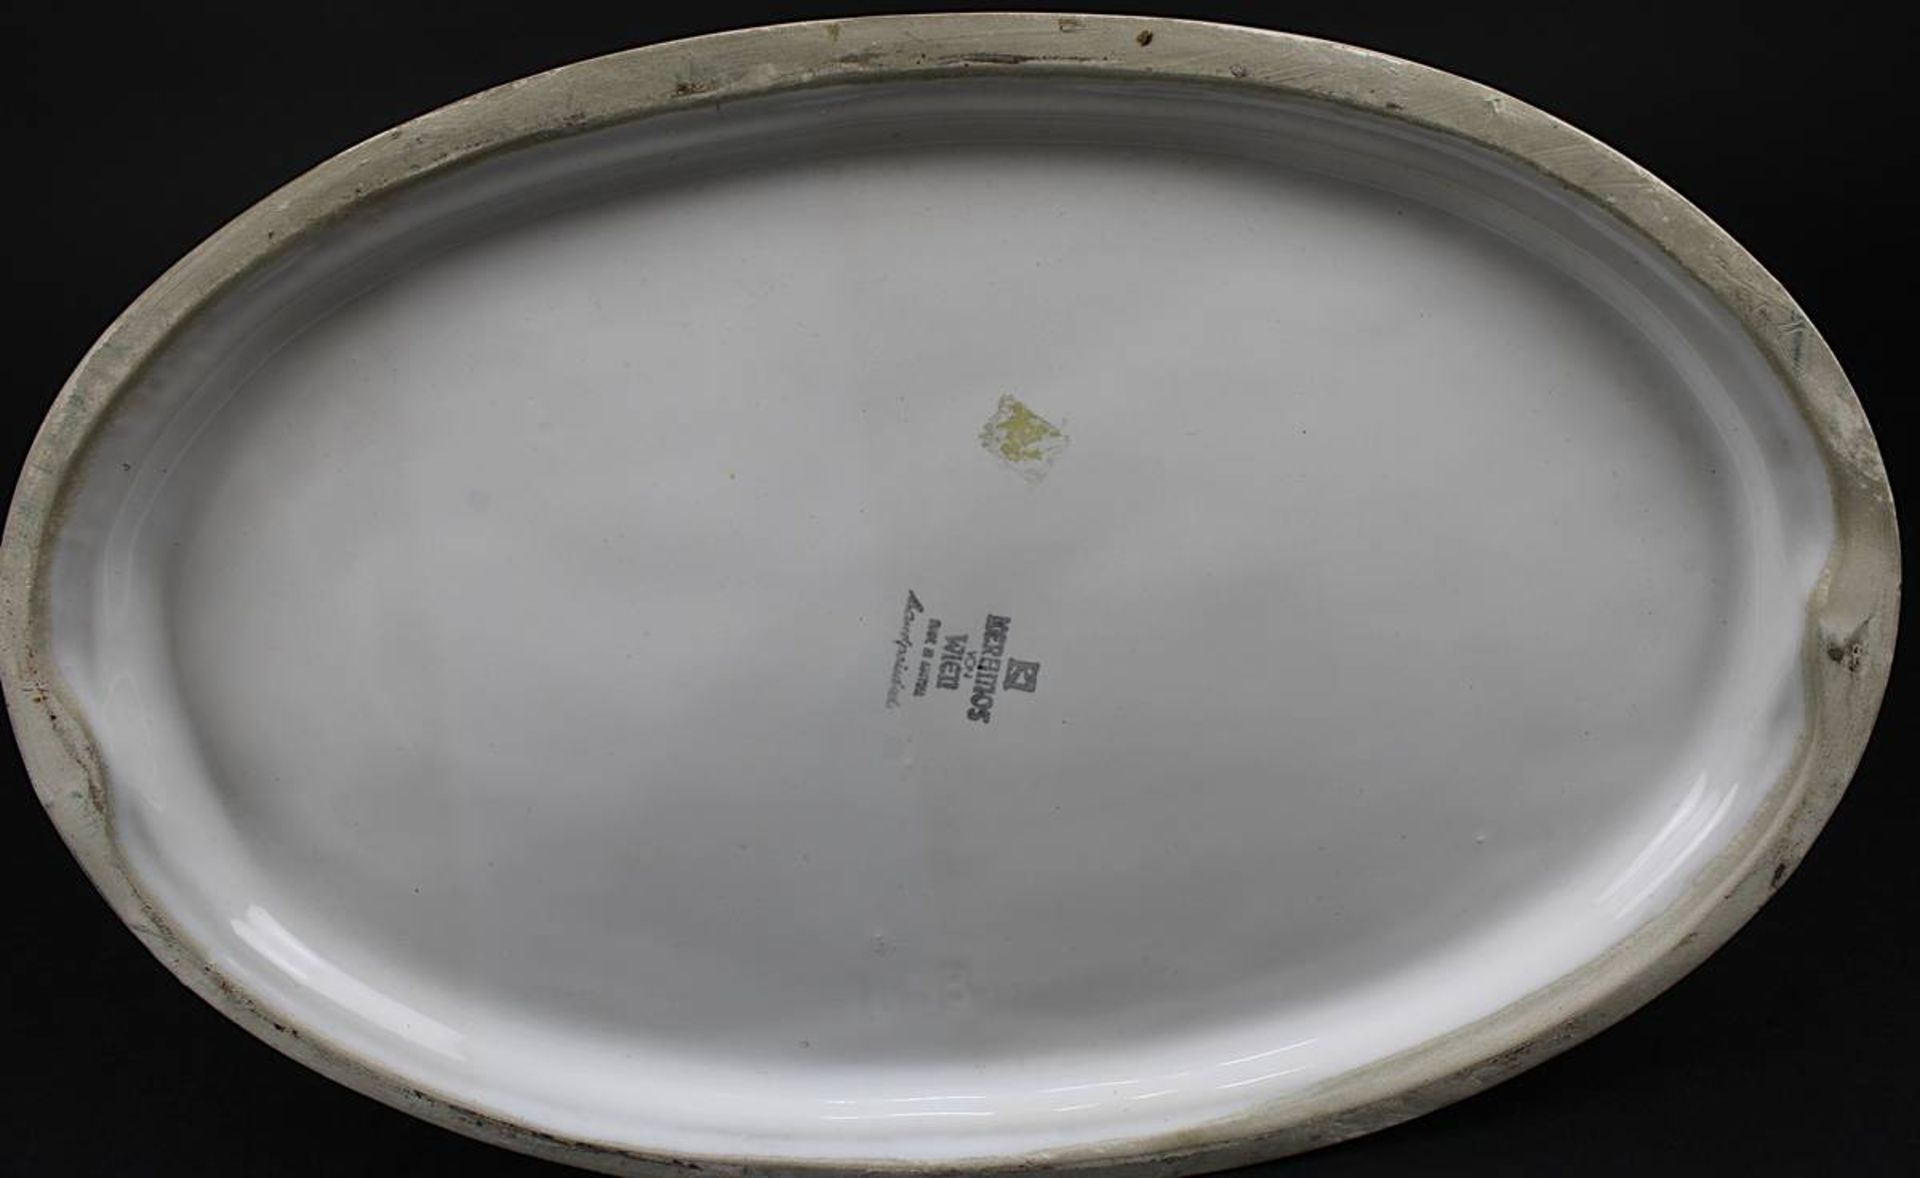 Keramos Keramikpferdegruppe, Wien 2. H. 20. Jh., Keramik heller Scherben, mit weißer Glasur - Bild 2 aus 2